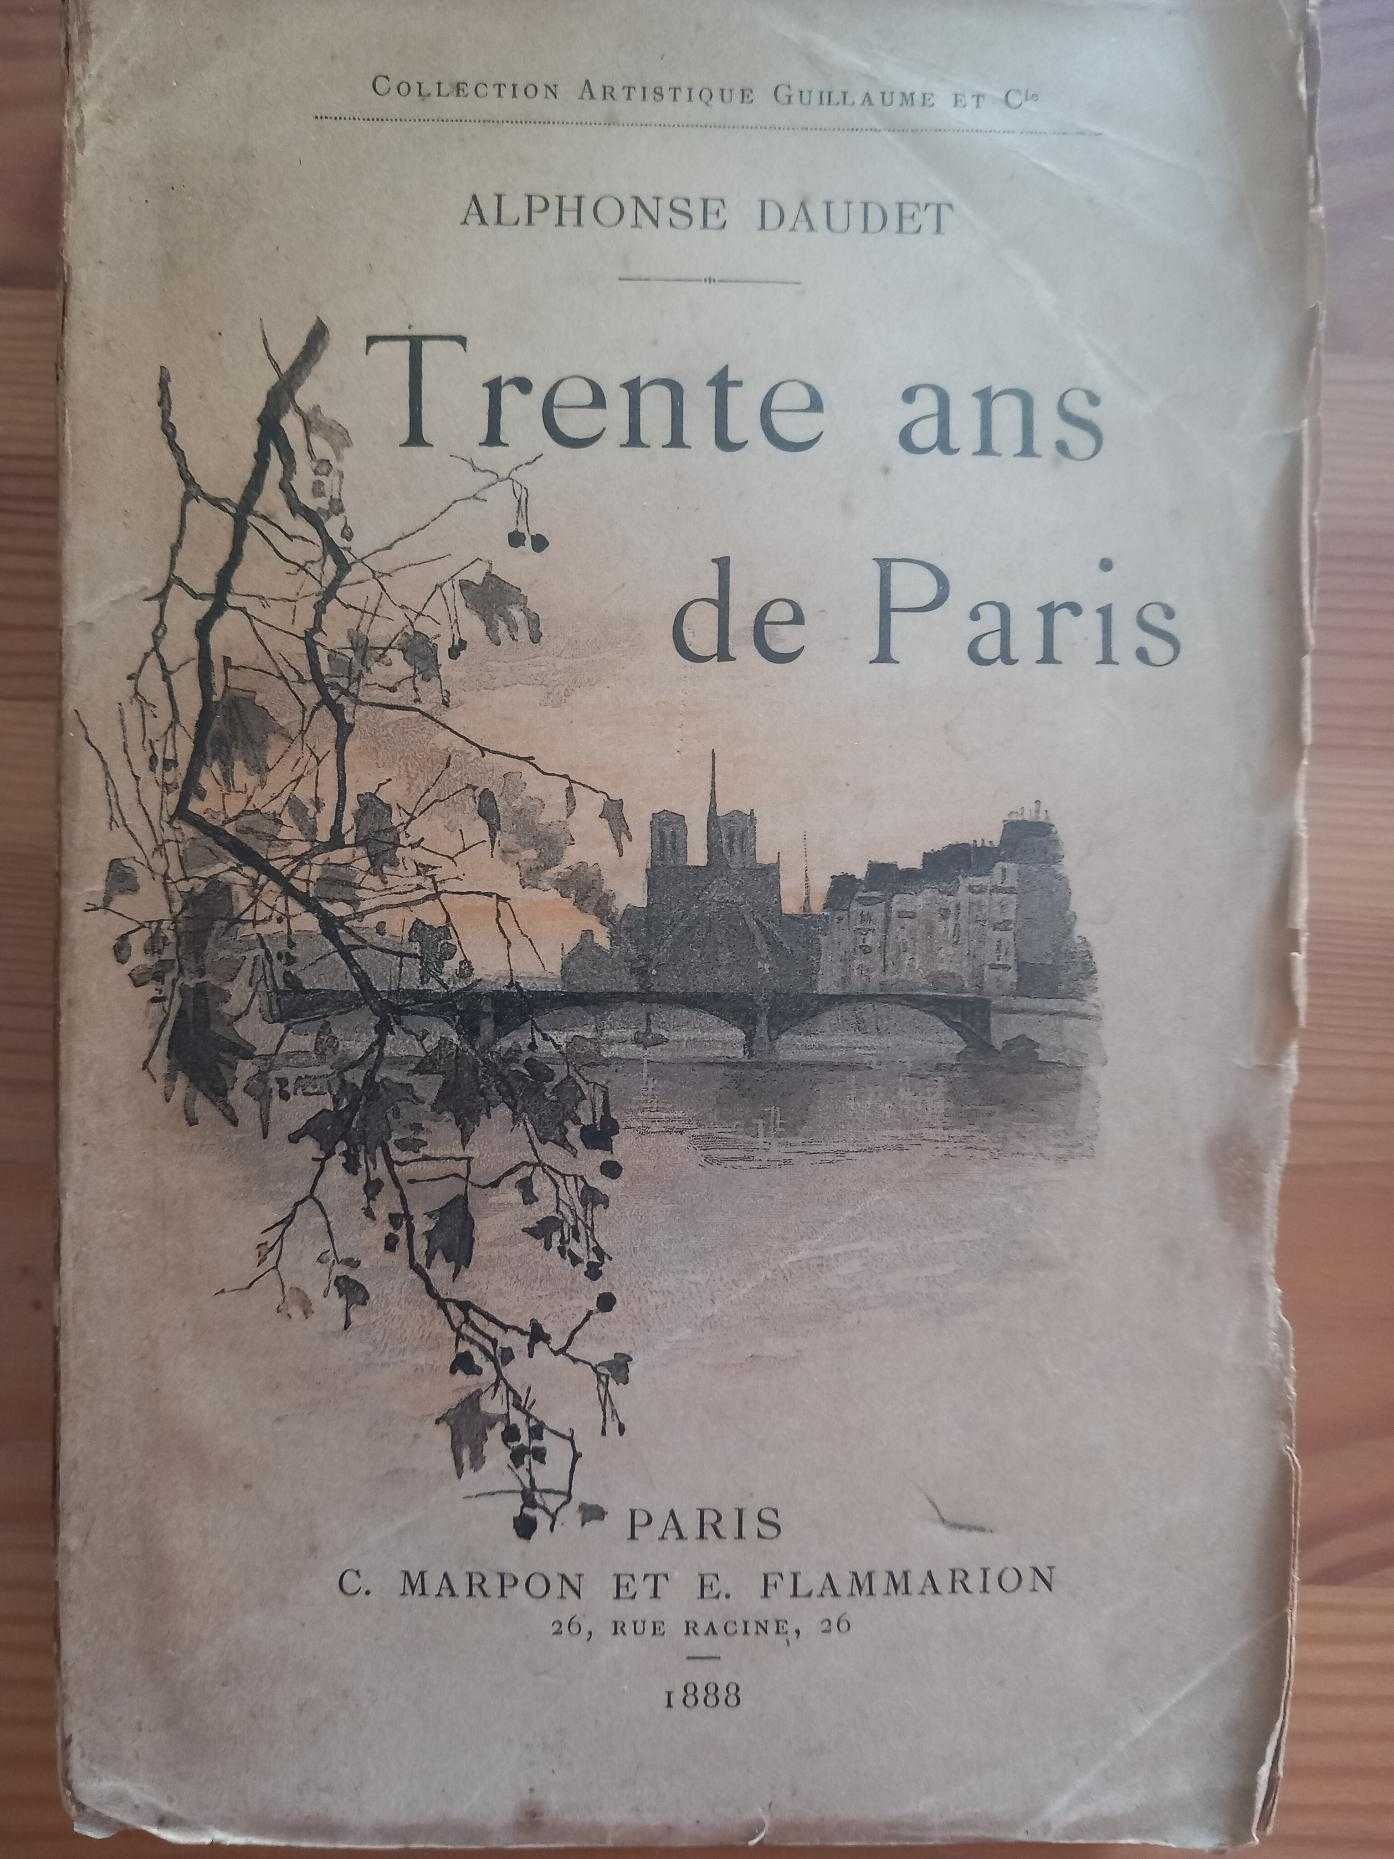 Alphonse Daudet, Trente ans de Paris, 1.ª edição